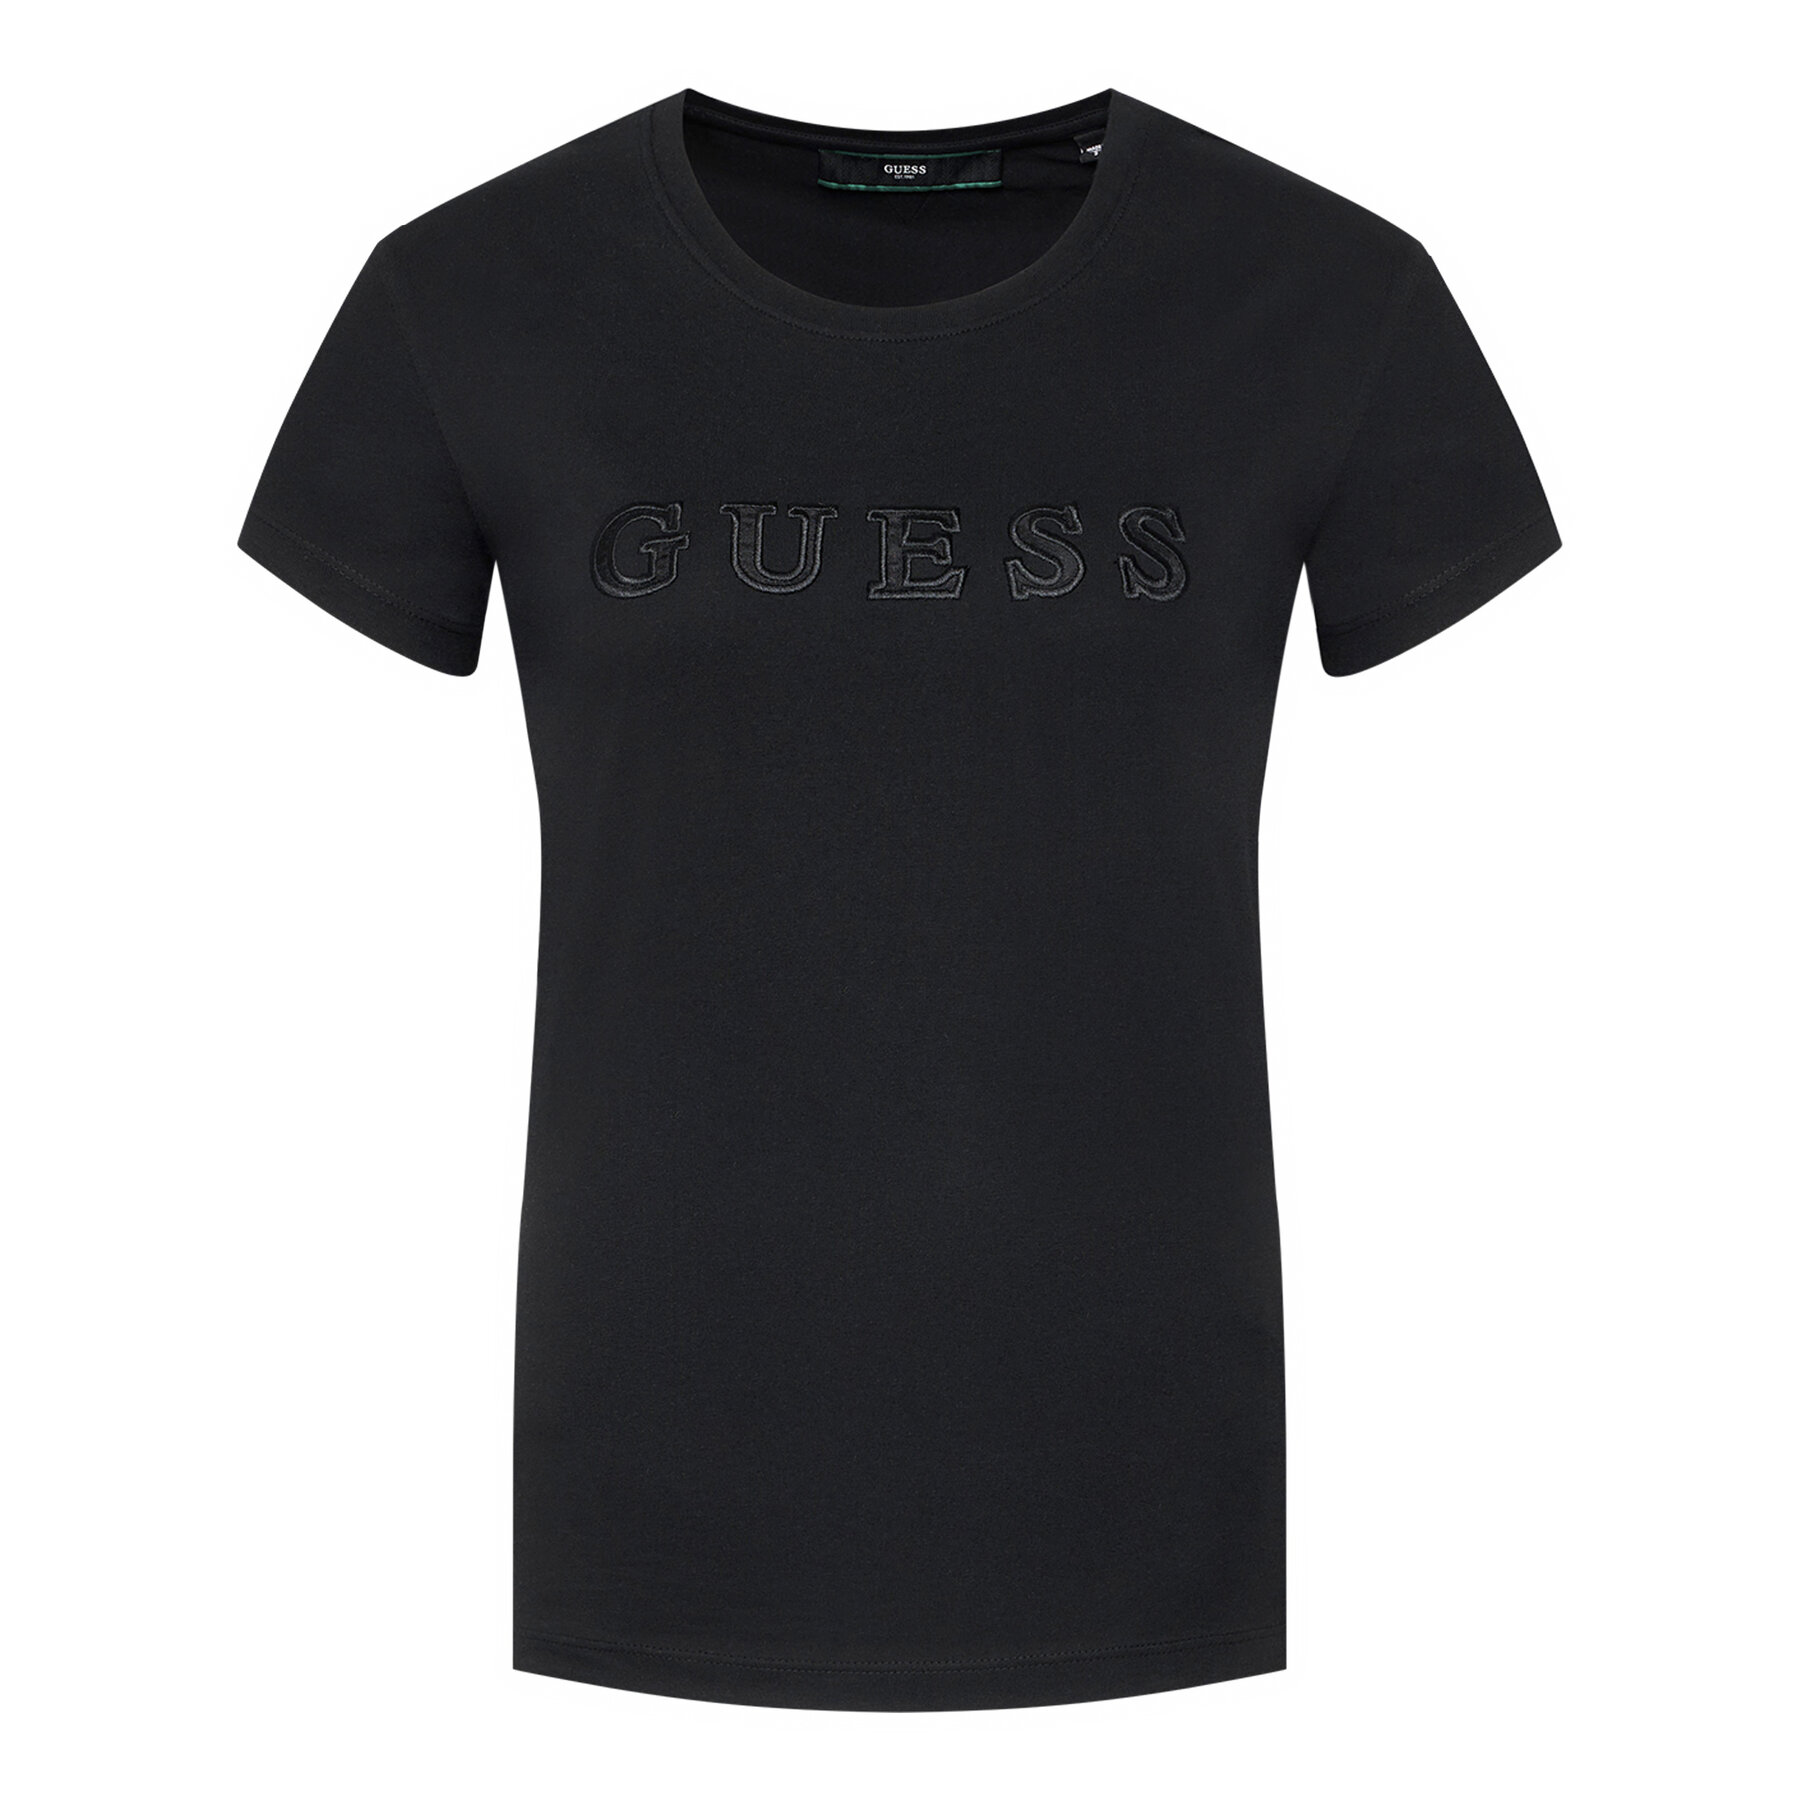 Tee-shirt noir O1ga05 Guess - Femme